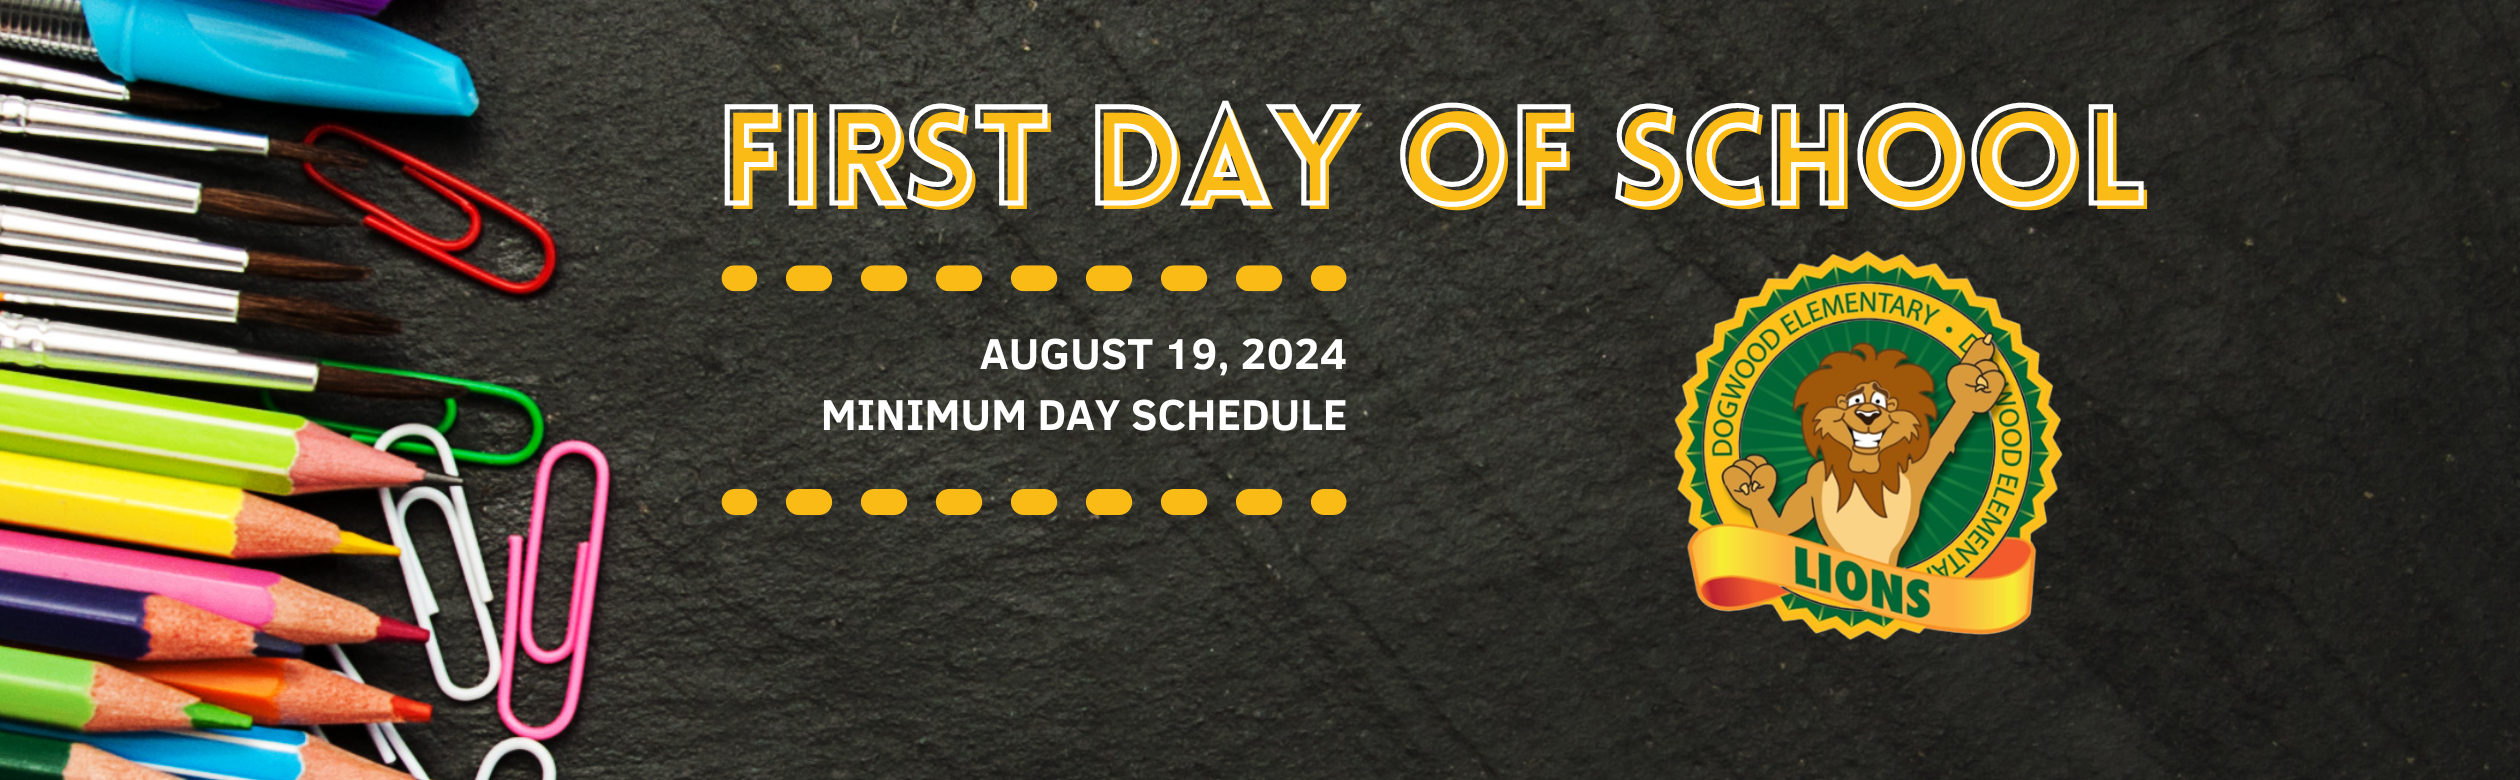 First Day of School, August 19, 2024. Minimum Day Schedule.